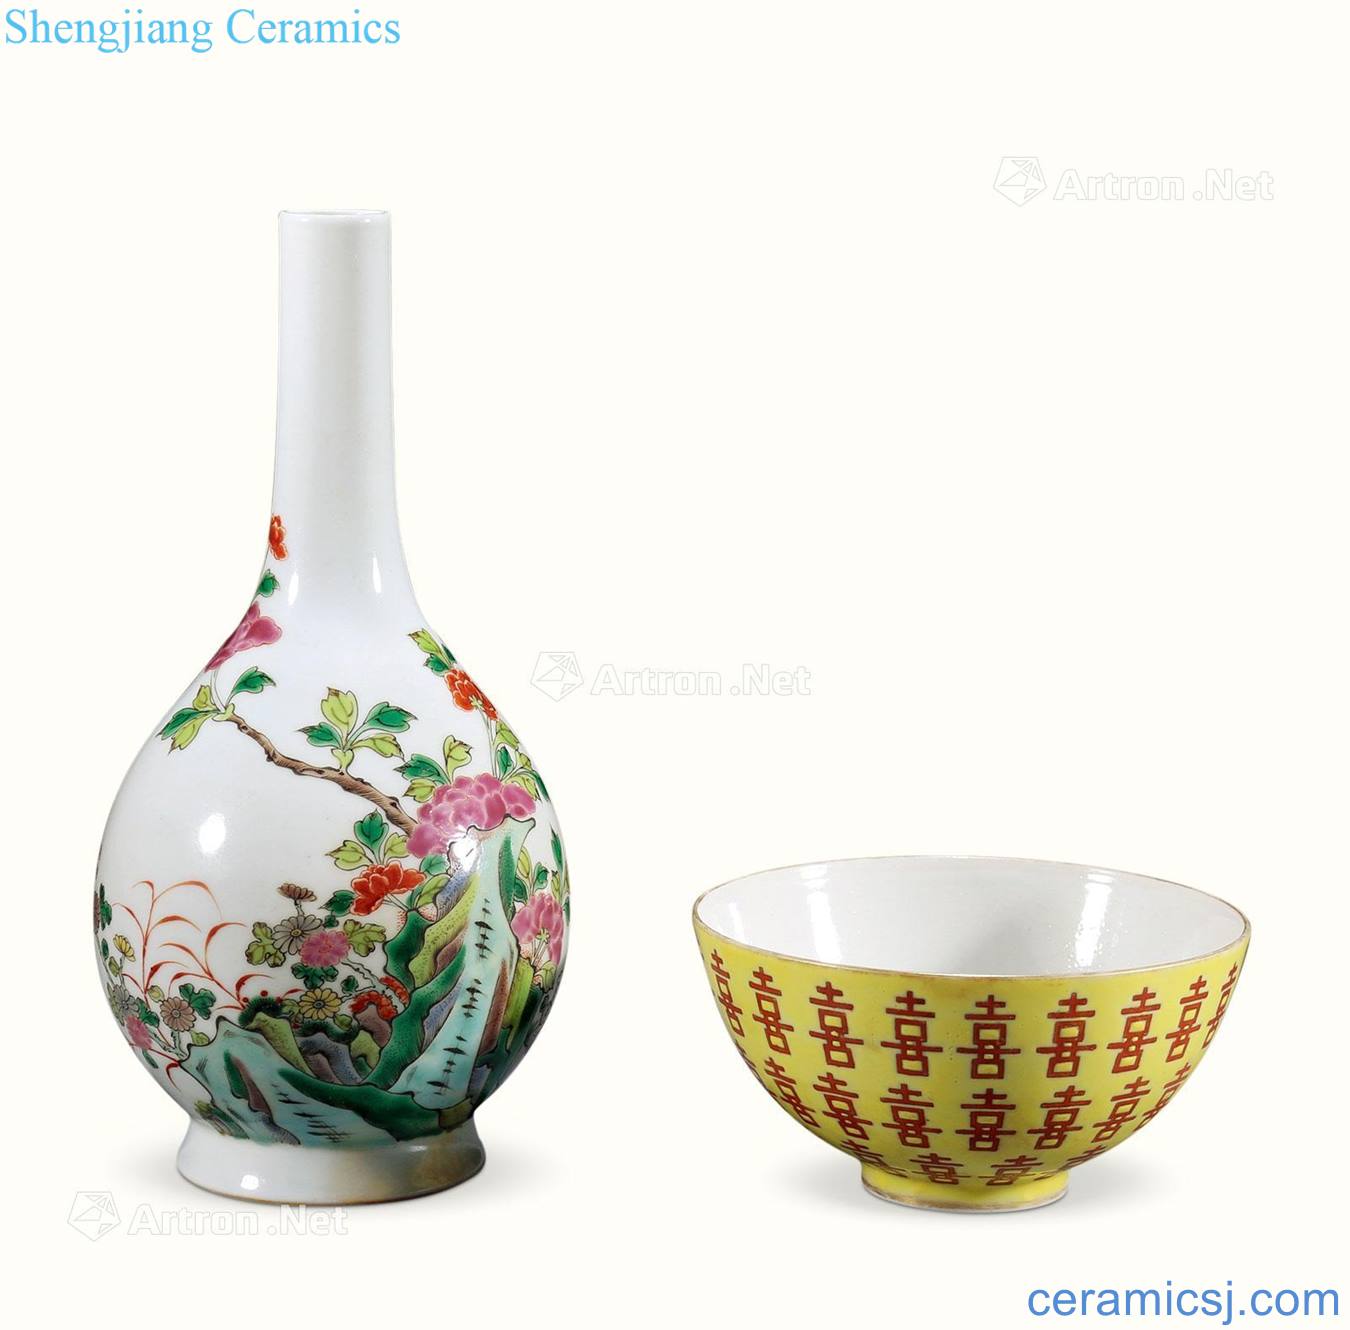 Qing famille rose bowl each bottle